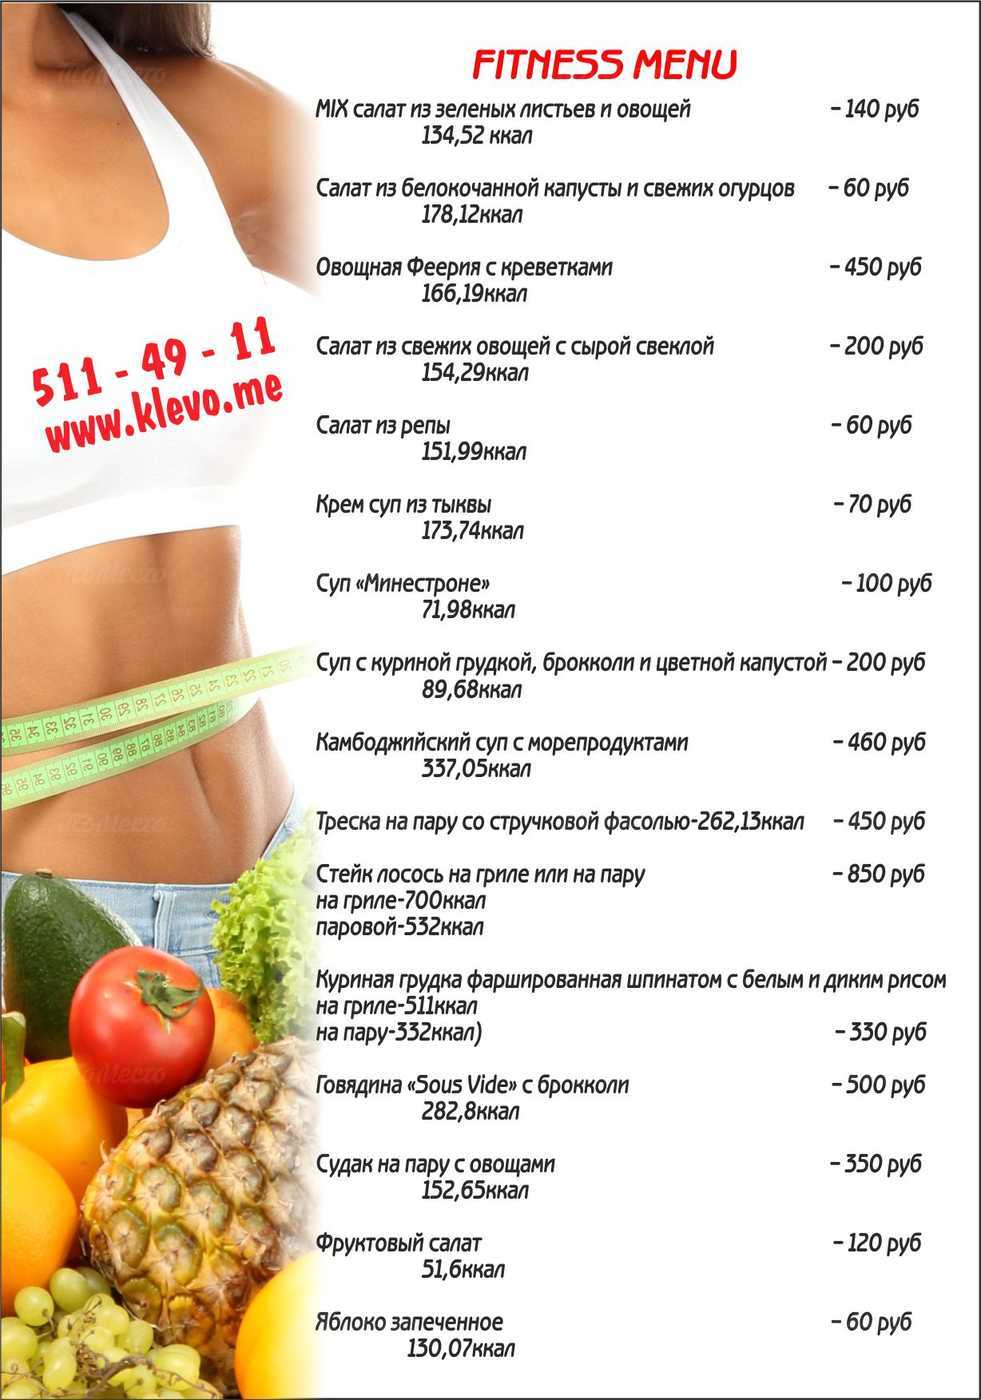 Интервальная тренировка и бег для сжигания жира и похудения: таблица и программа | официальный сайт – “славянская клиника похудения и правильного питания”